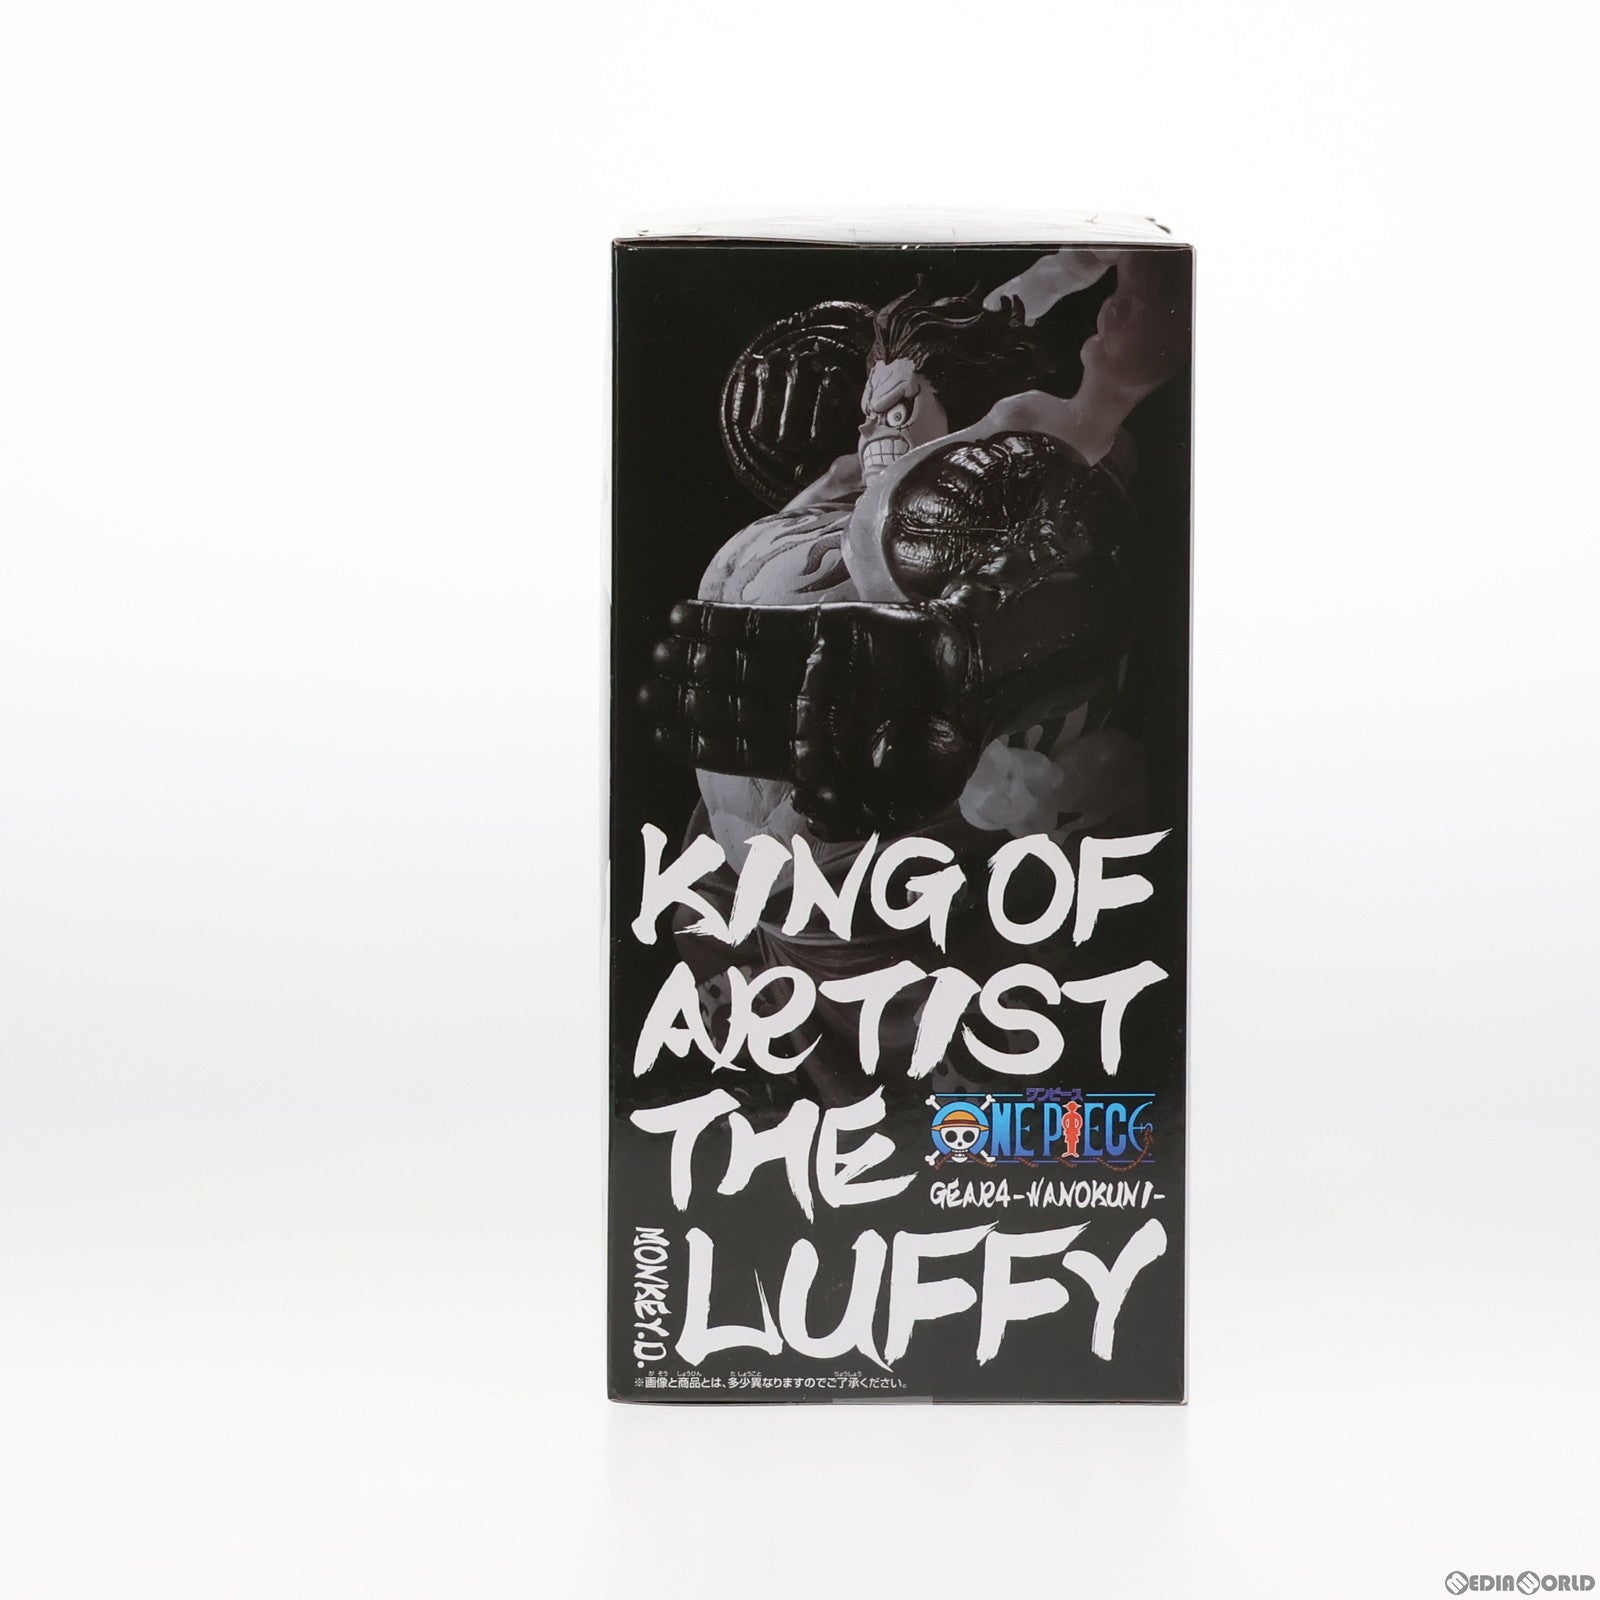 中古即納】[FIG]モンキー・D・ルフィ ワンピース KING OF ARTIST THE MONKEY.D.LUFFY GEAR4-ワノ国- ONE  PIECE フィギュア プライズ(82544) バンプレスト